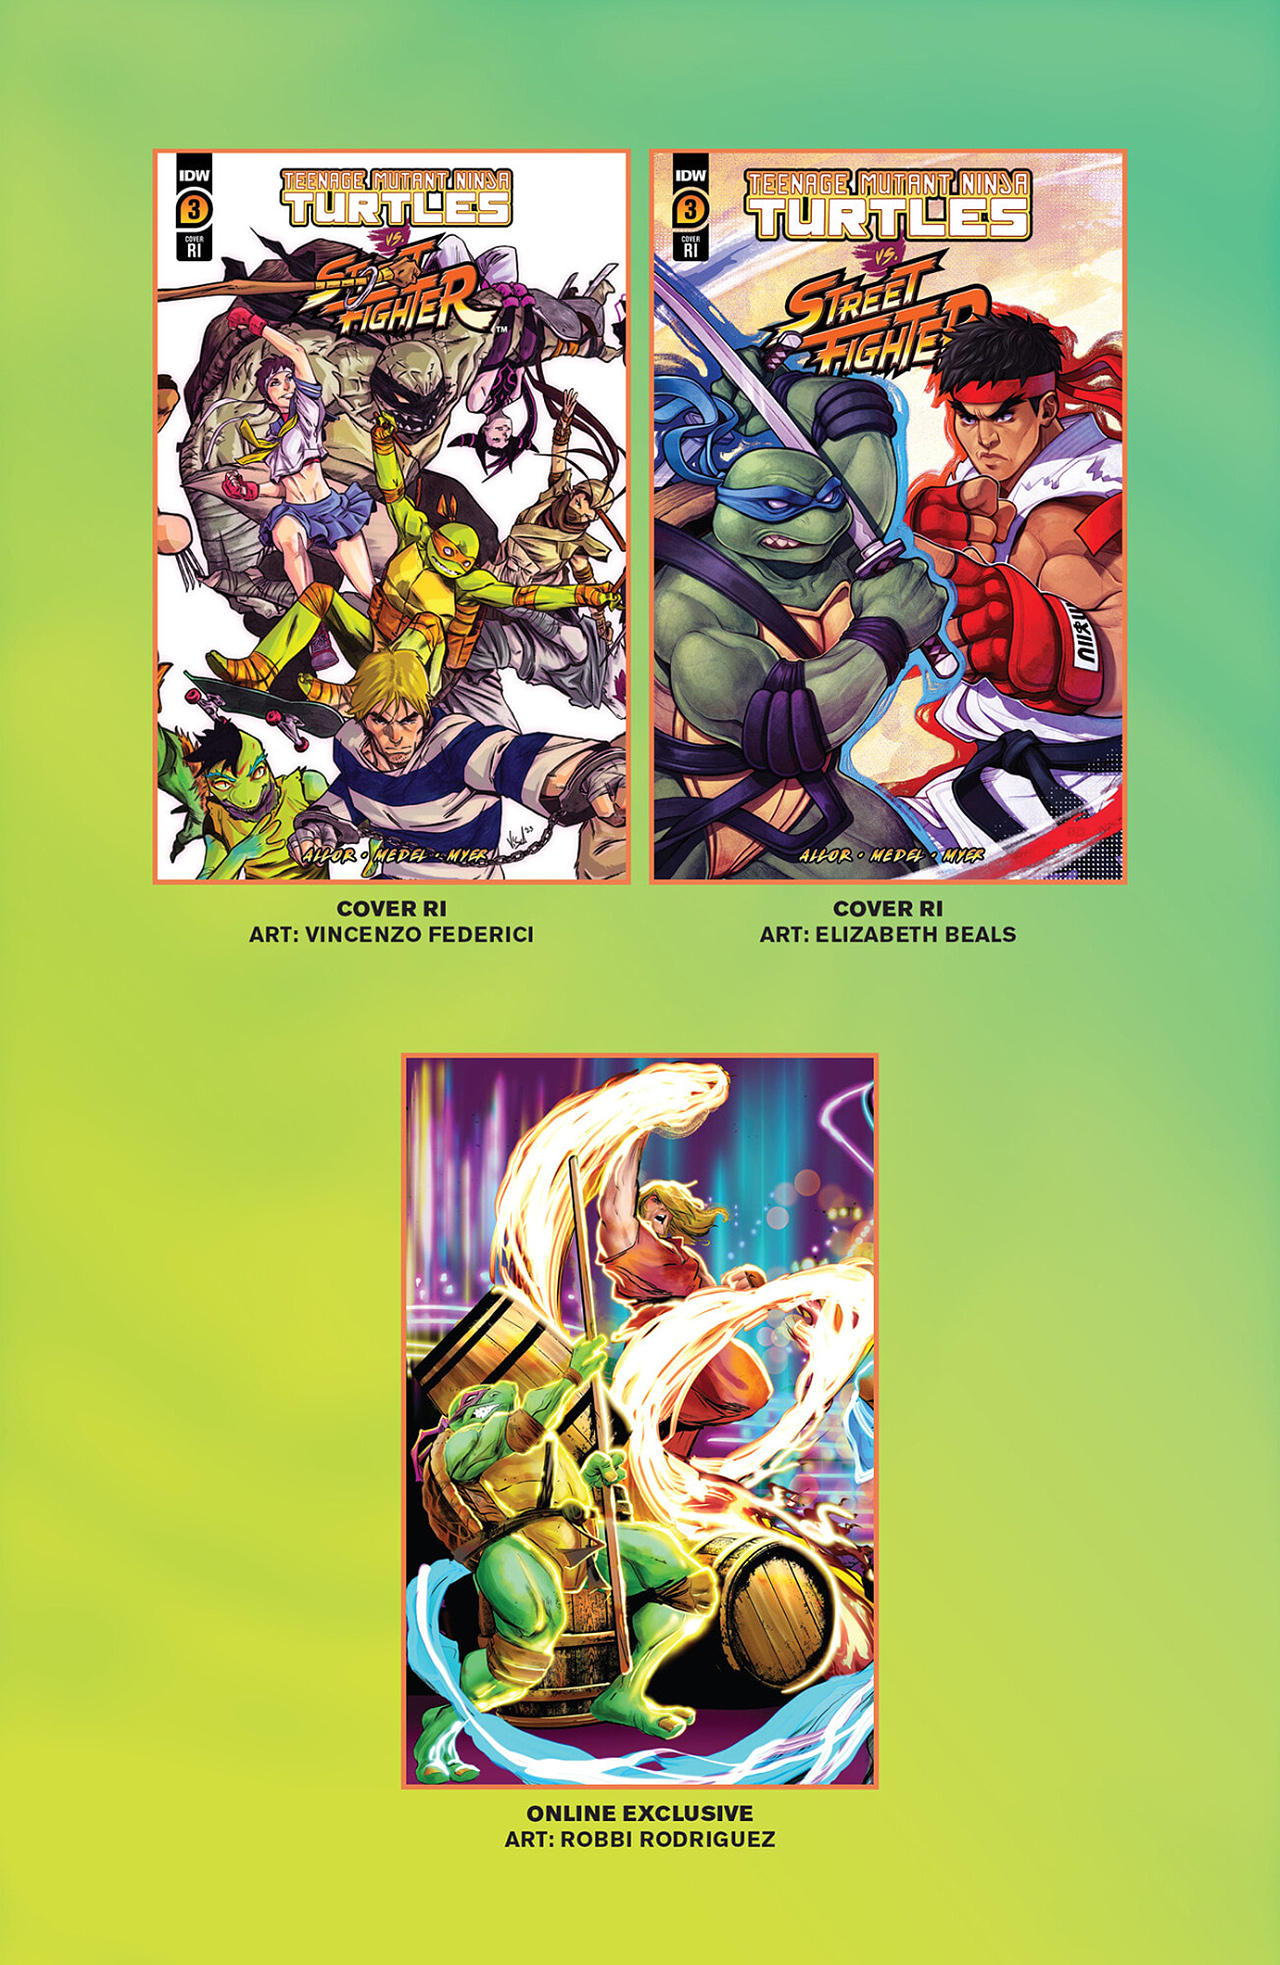 Read online Teenage Mutant Ninja Turtles vs. Street Fighter comic -  Issue #3 - 29